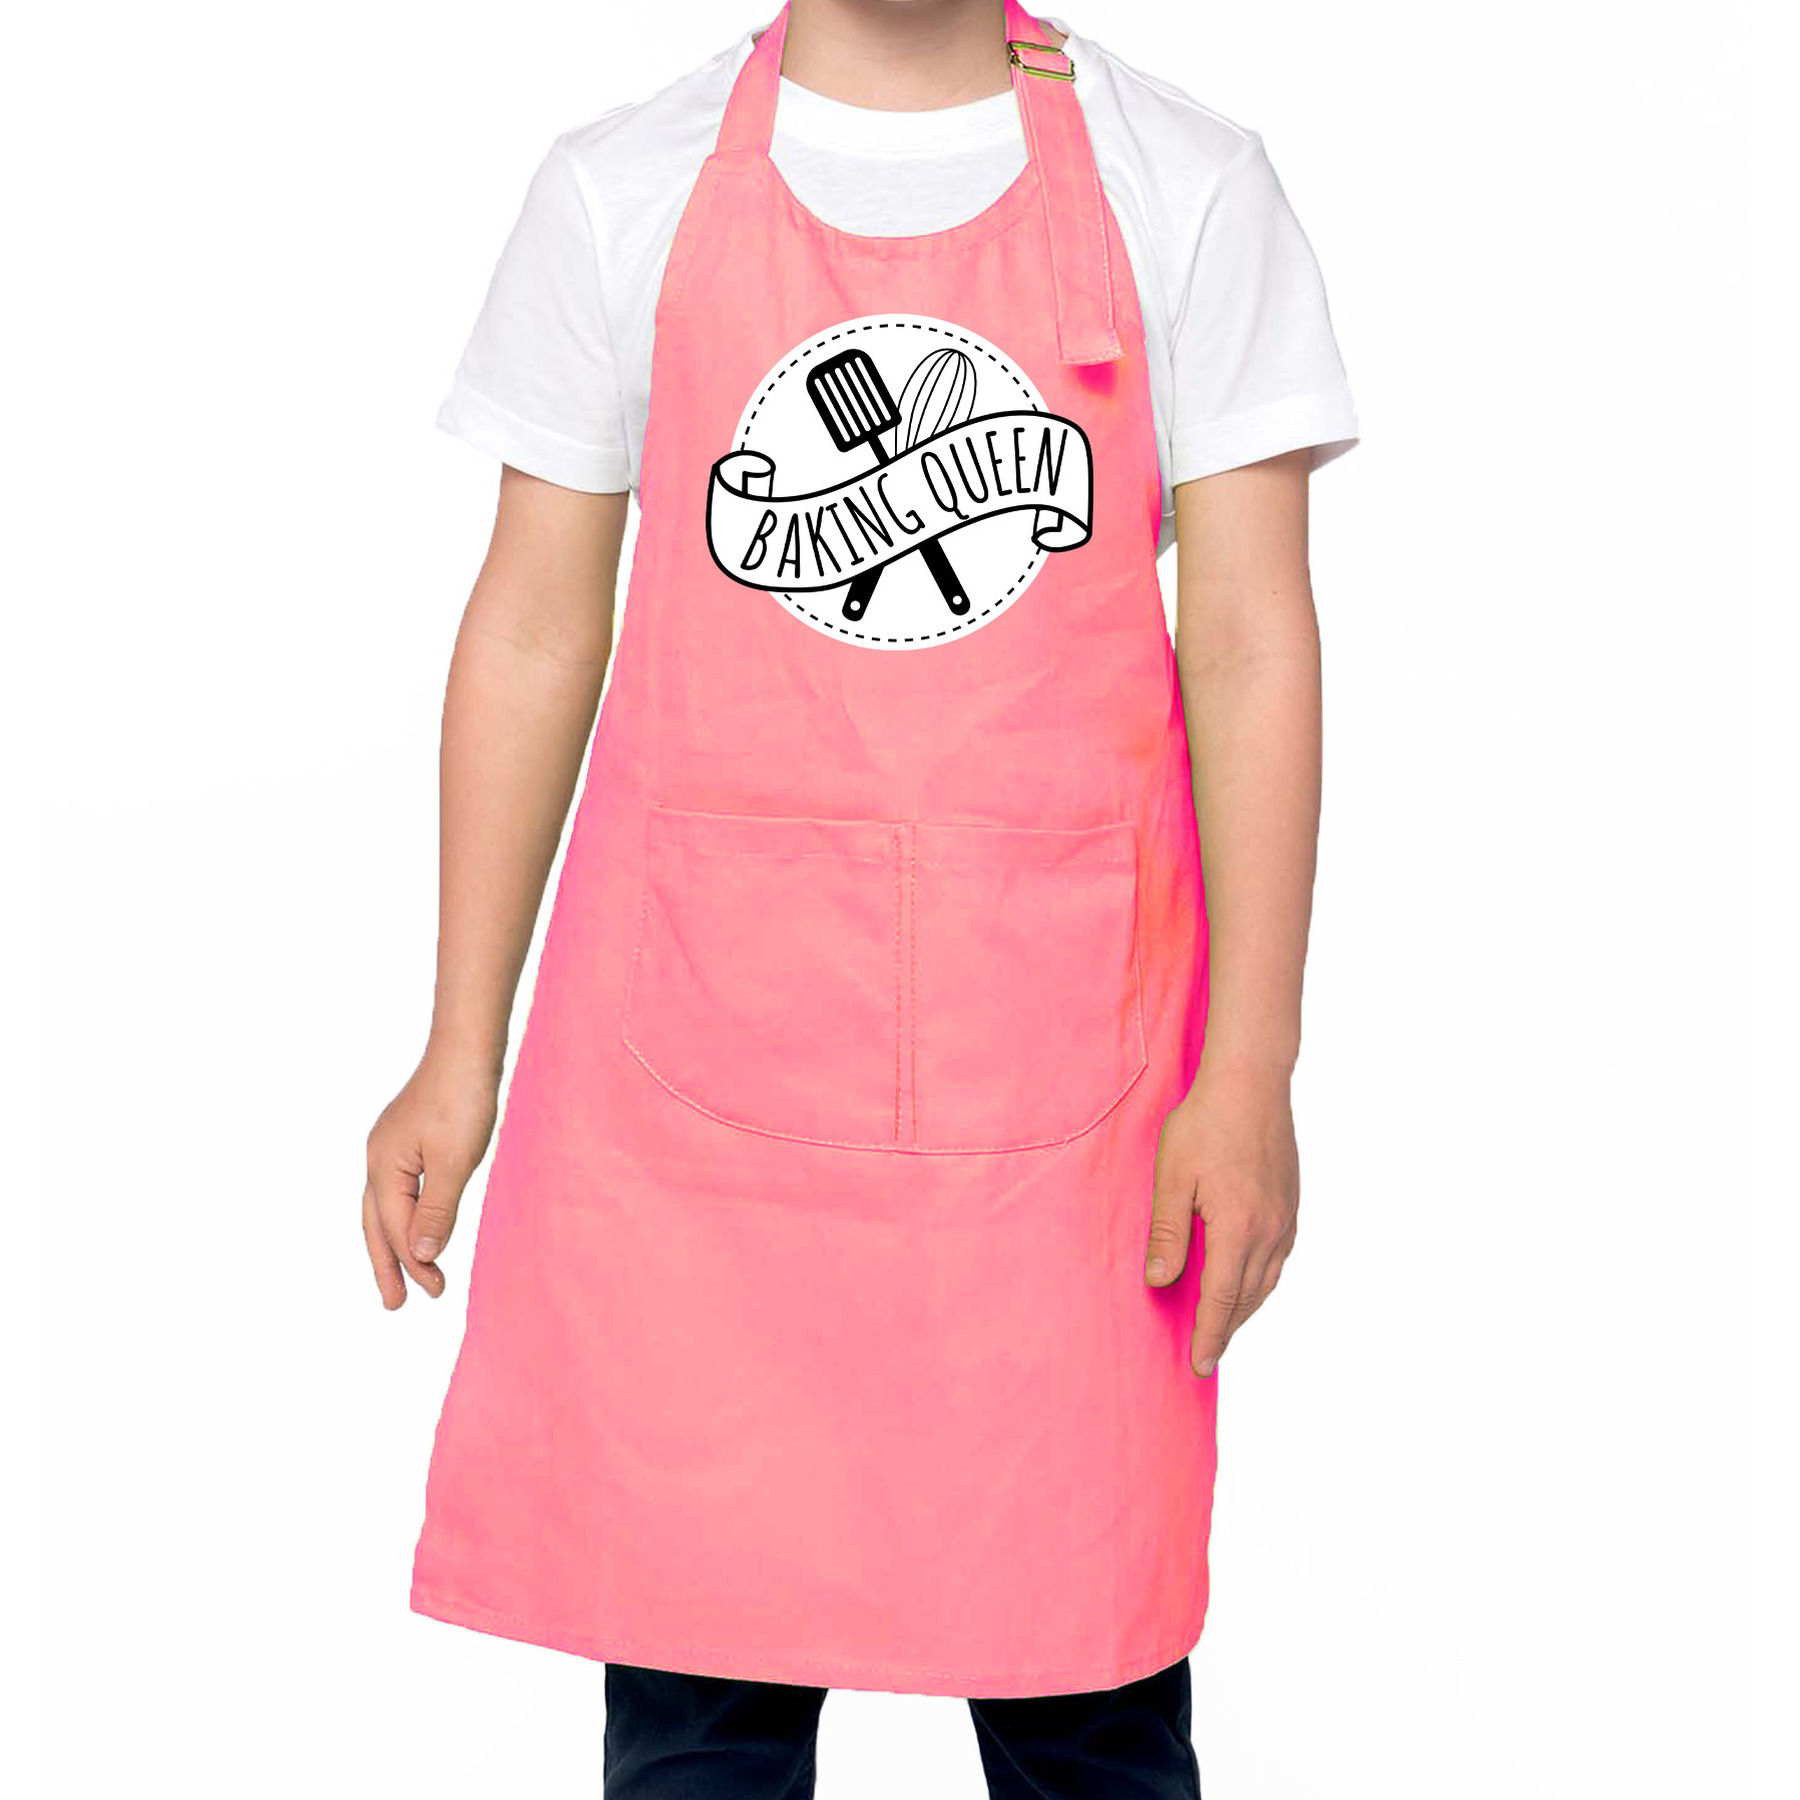 Baking Queen bak keukenschort/ kinderschort roze voor meisjes - Bakken met kinderen